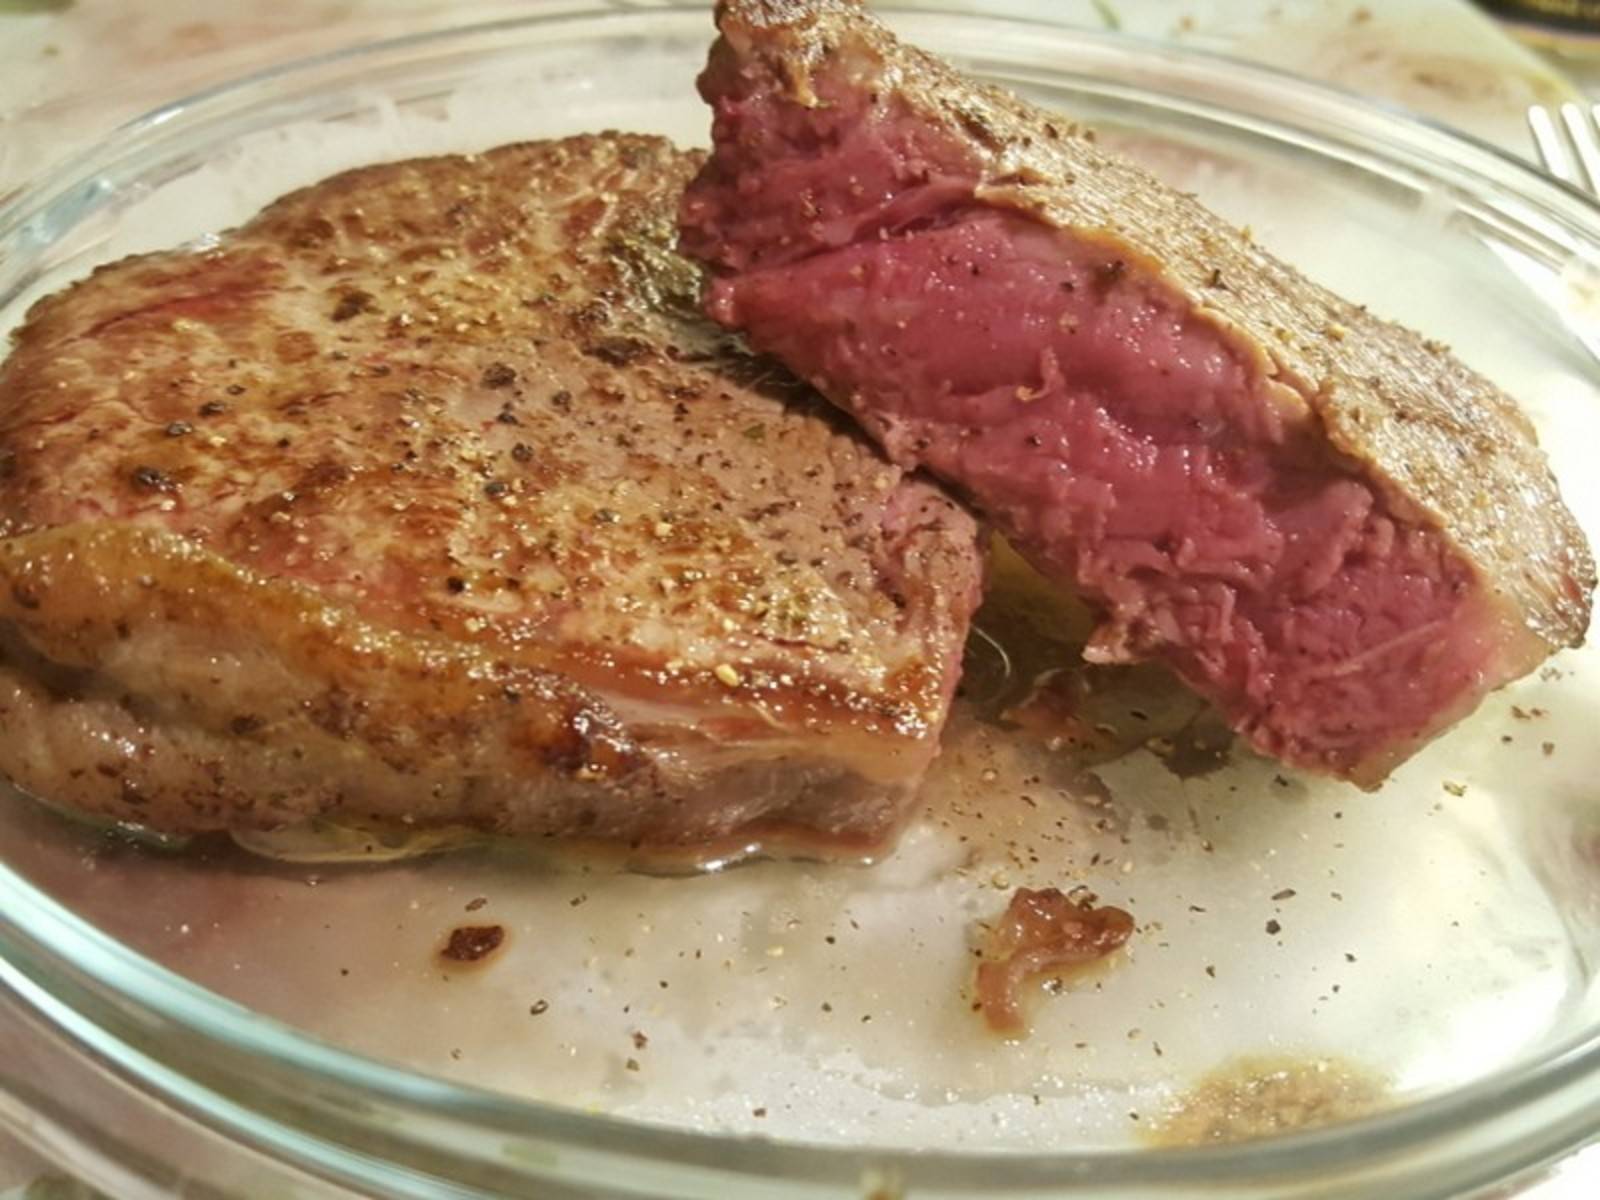 Steak medium